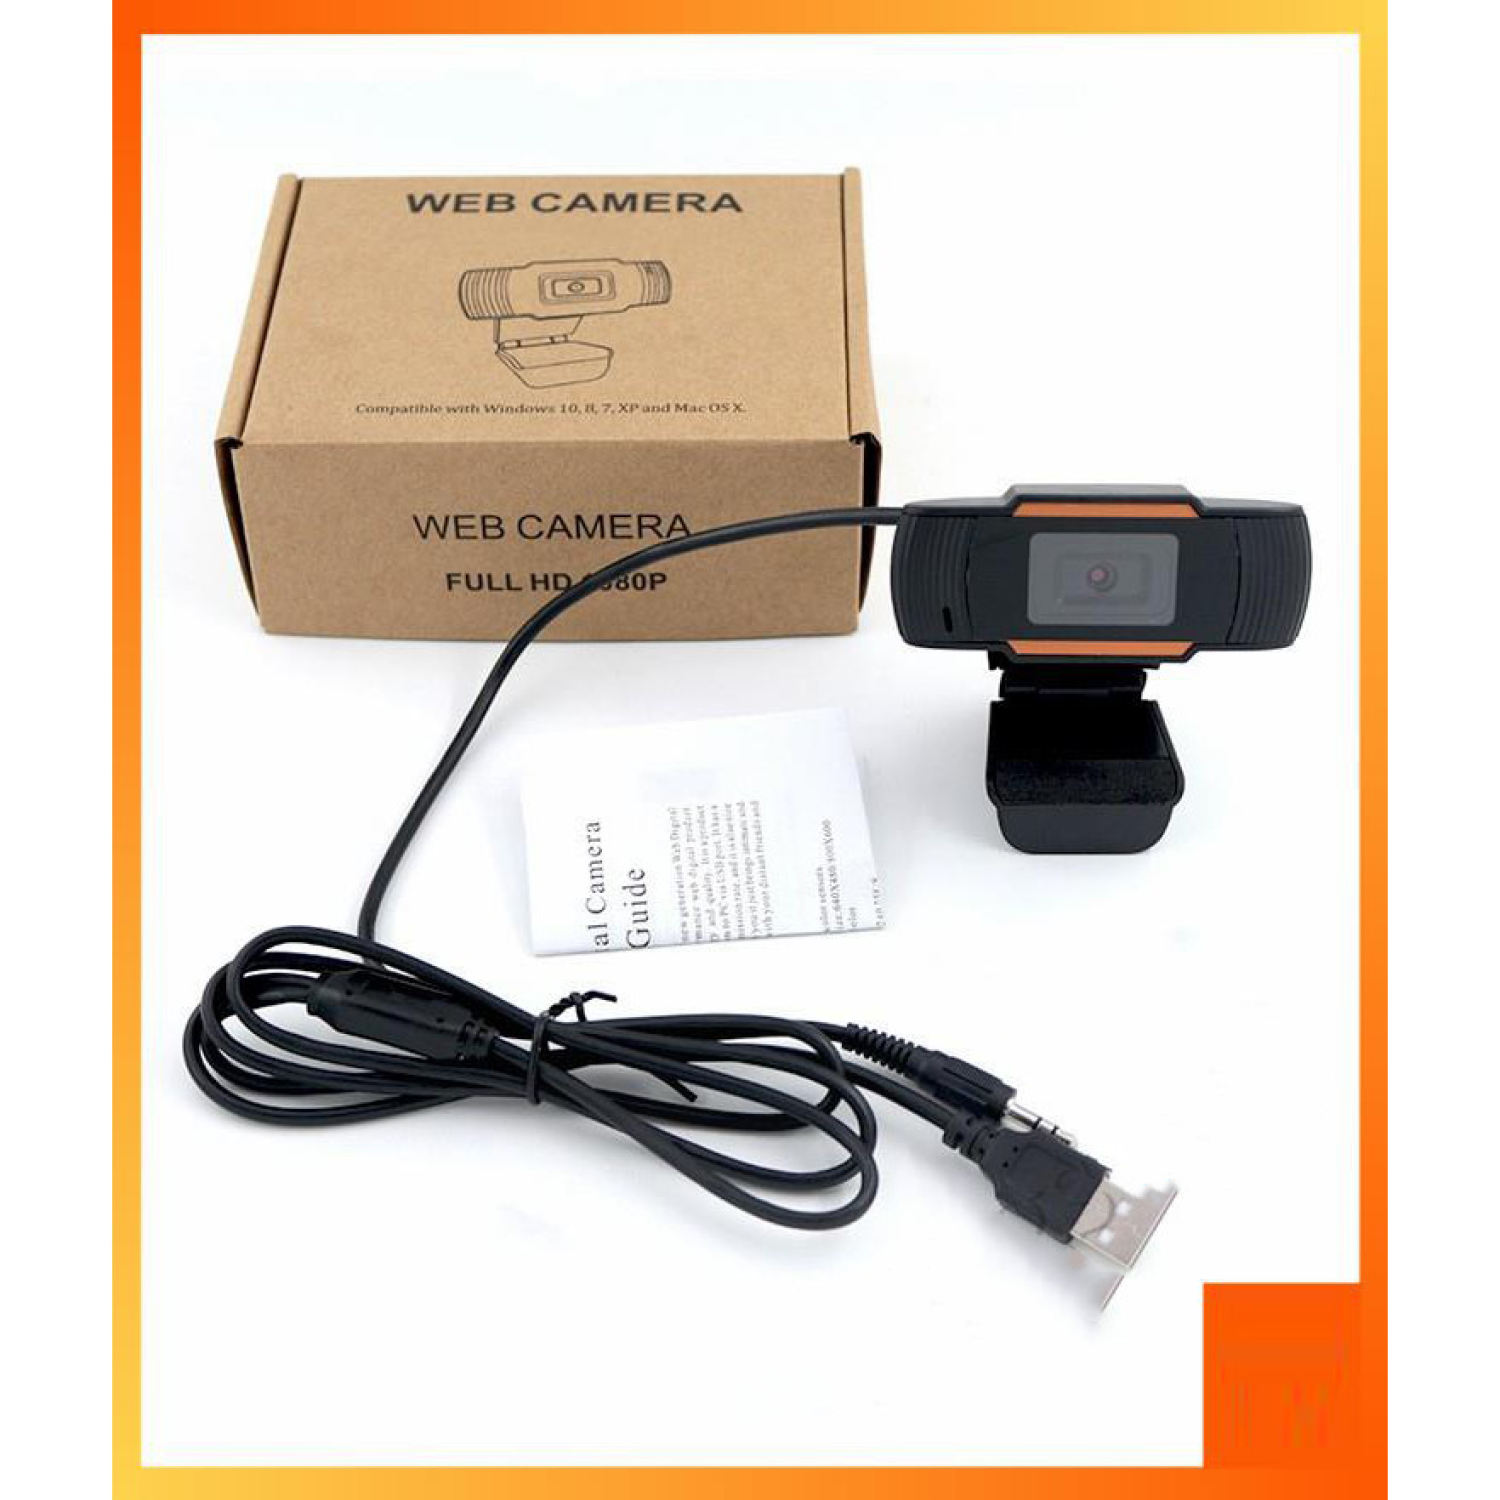 (lᴏại 1)Webcam máy tính có mic 720P , Webcam có mic Chuyên Dụng Cho Livestream Học Và Làm Việc Online...